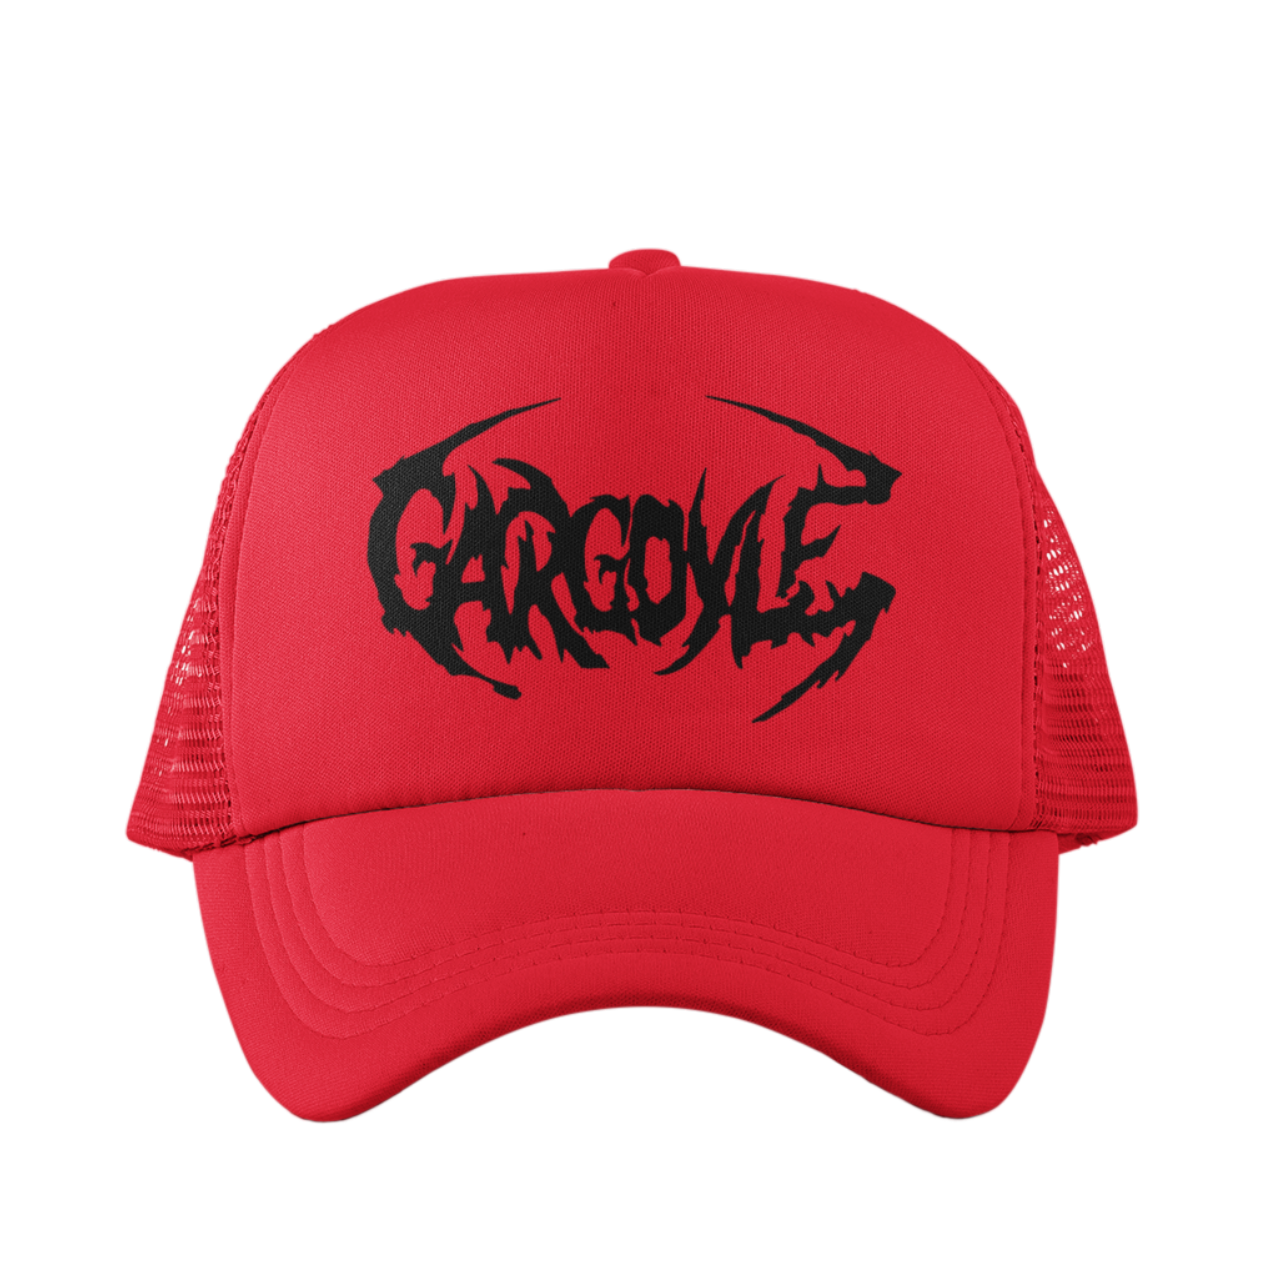 Organik Lyfestyle - Gargoyle G.A.N.G - Red & Black Hat